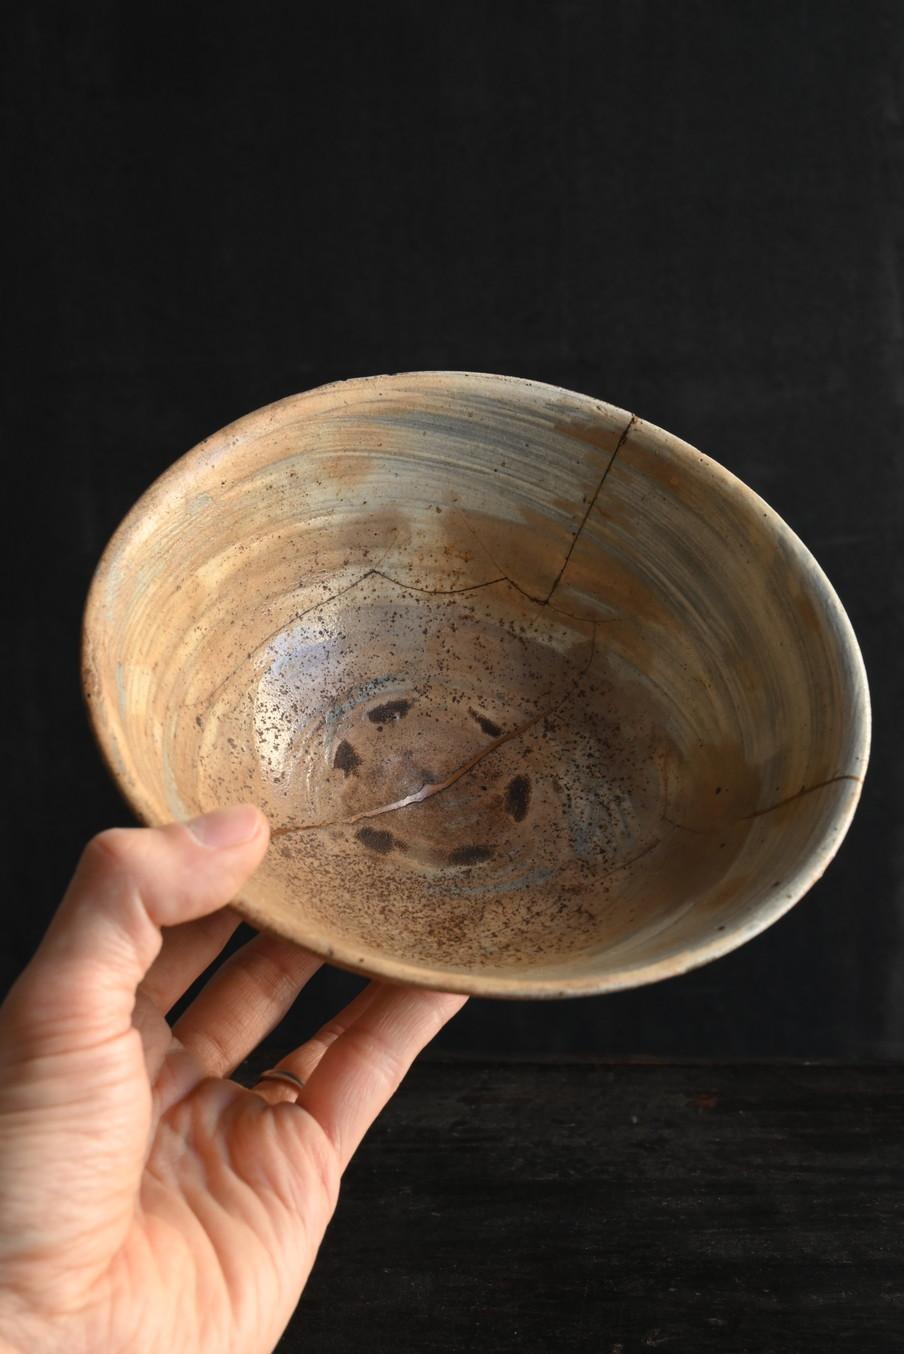 Dies ist eine Keramik aus der frühen Joseon-Dynastie in Korea.
Diese Teeschale wurde etwa im 15. bis 16. Jahrhundert hergestellt.
Kennzeichnend für diese Epoche war, dass rein weiße Töpferwaren nur von der privilegierten Klasse verwendet werden